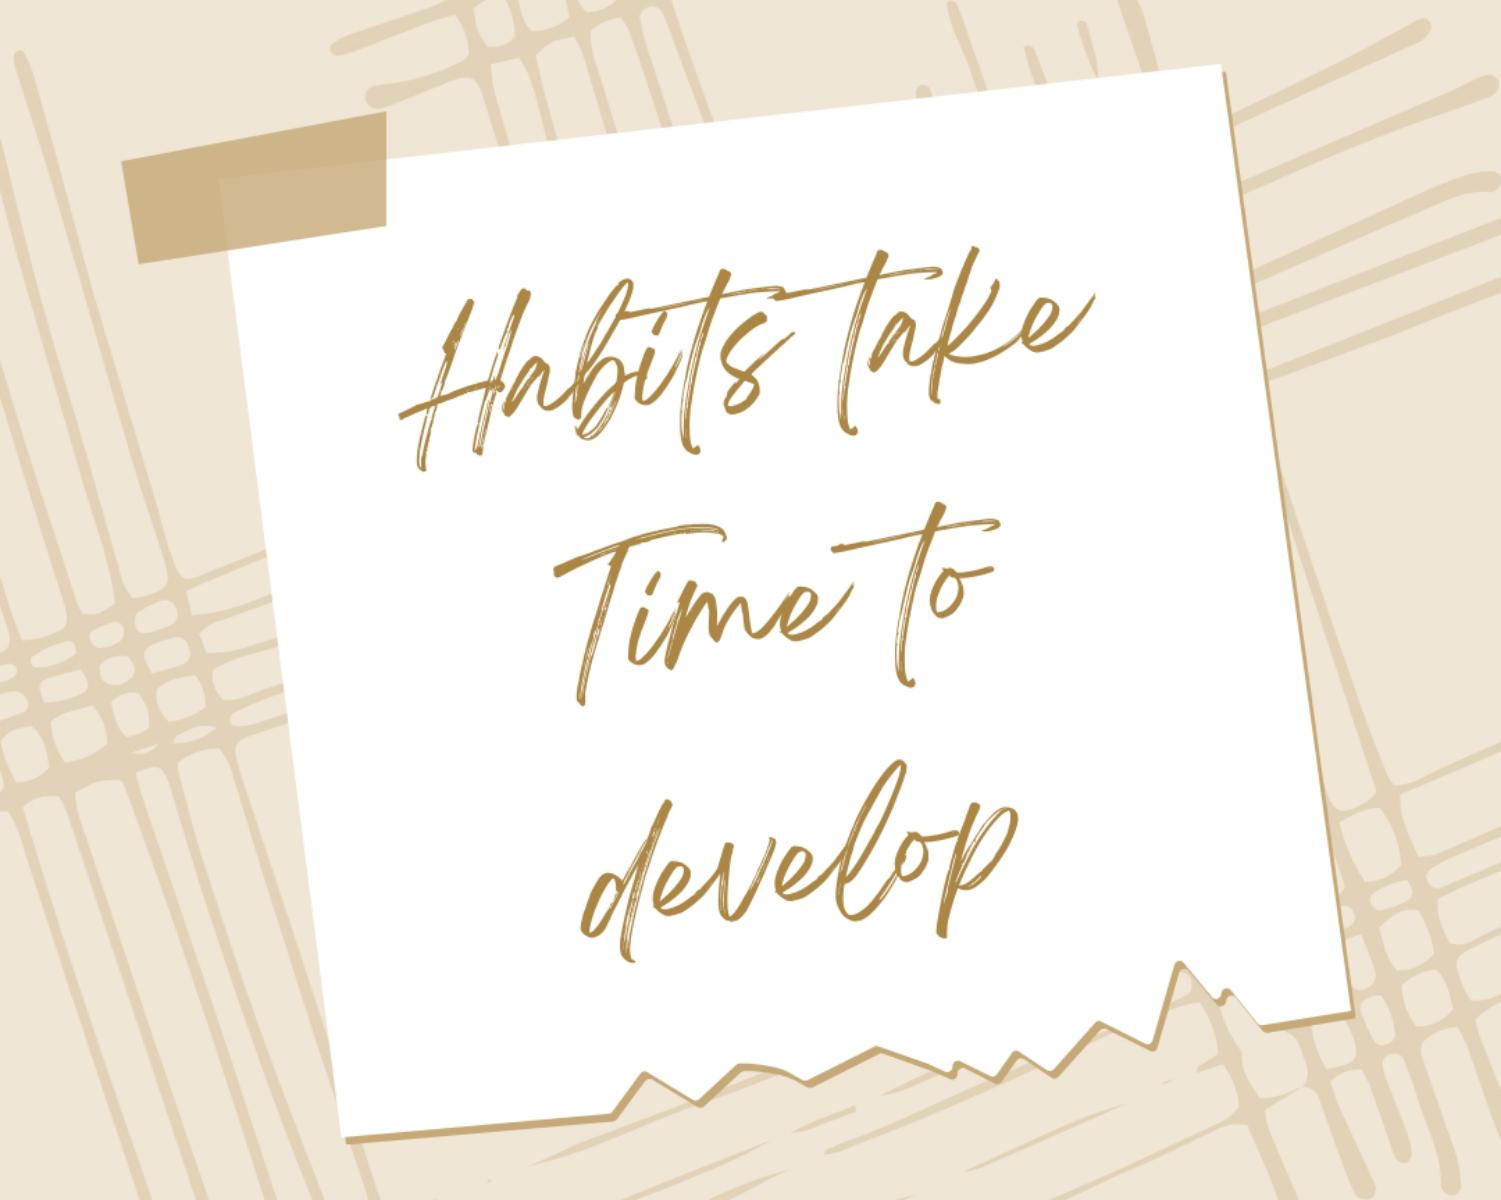 Habits Take Time To Develop